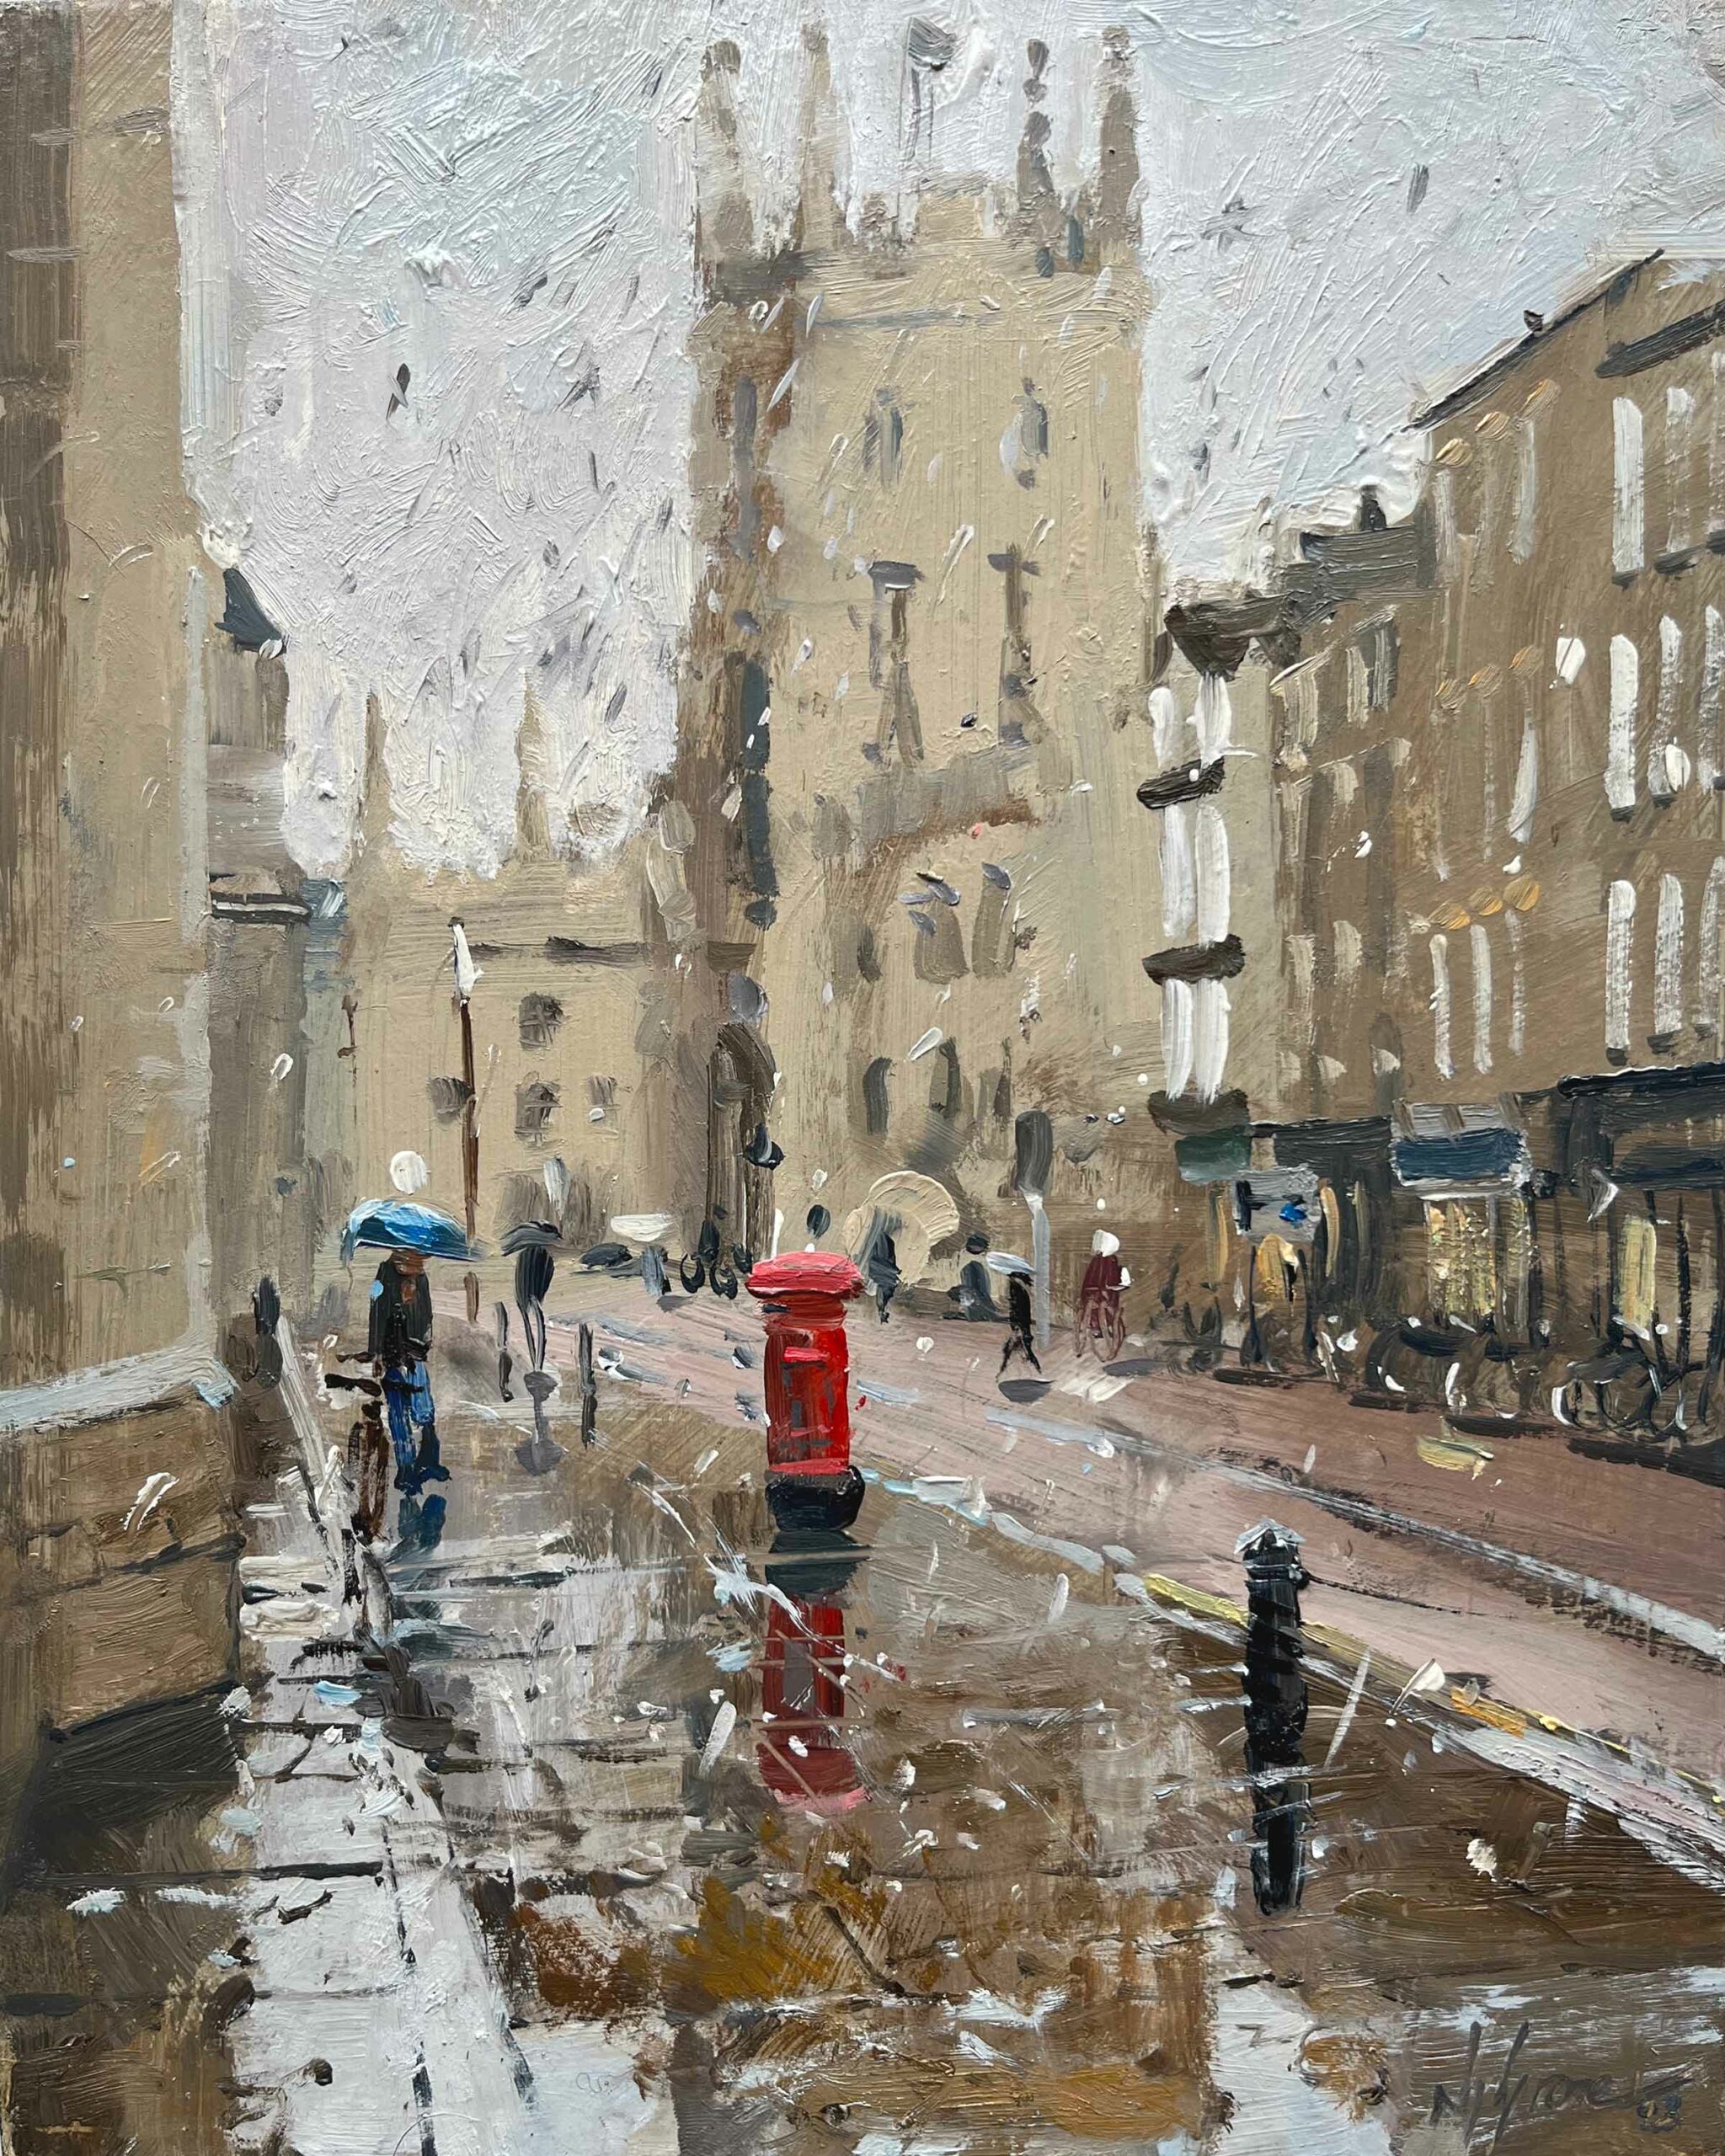 Raining hard on Trumpington St, Cambridge